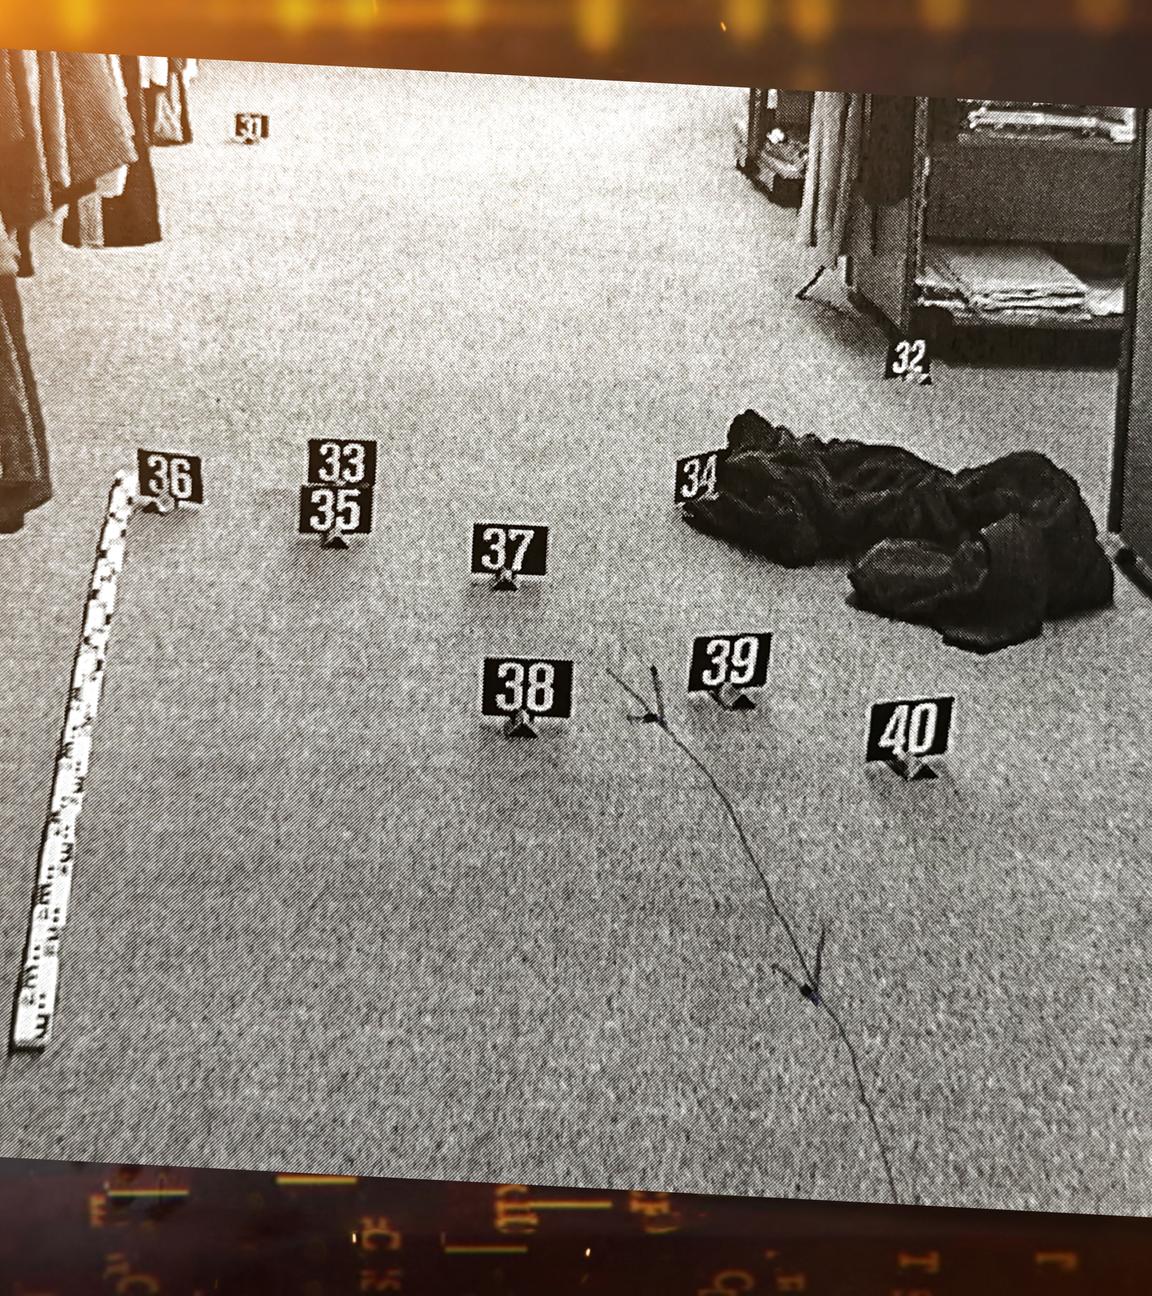 Der Tatort im Modegeschäft. Auf dem Boden sieht man den Bademantel, und einen Gürtel (Mordwaffe). Jegliche Spuren wurden mit Schildern markiert.